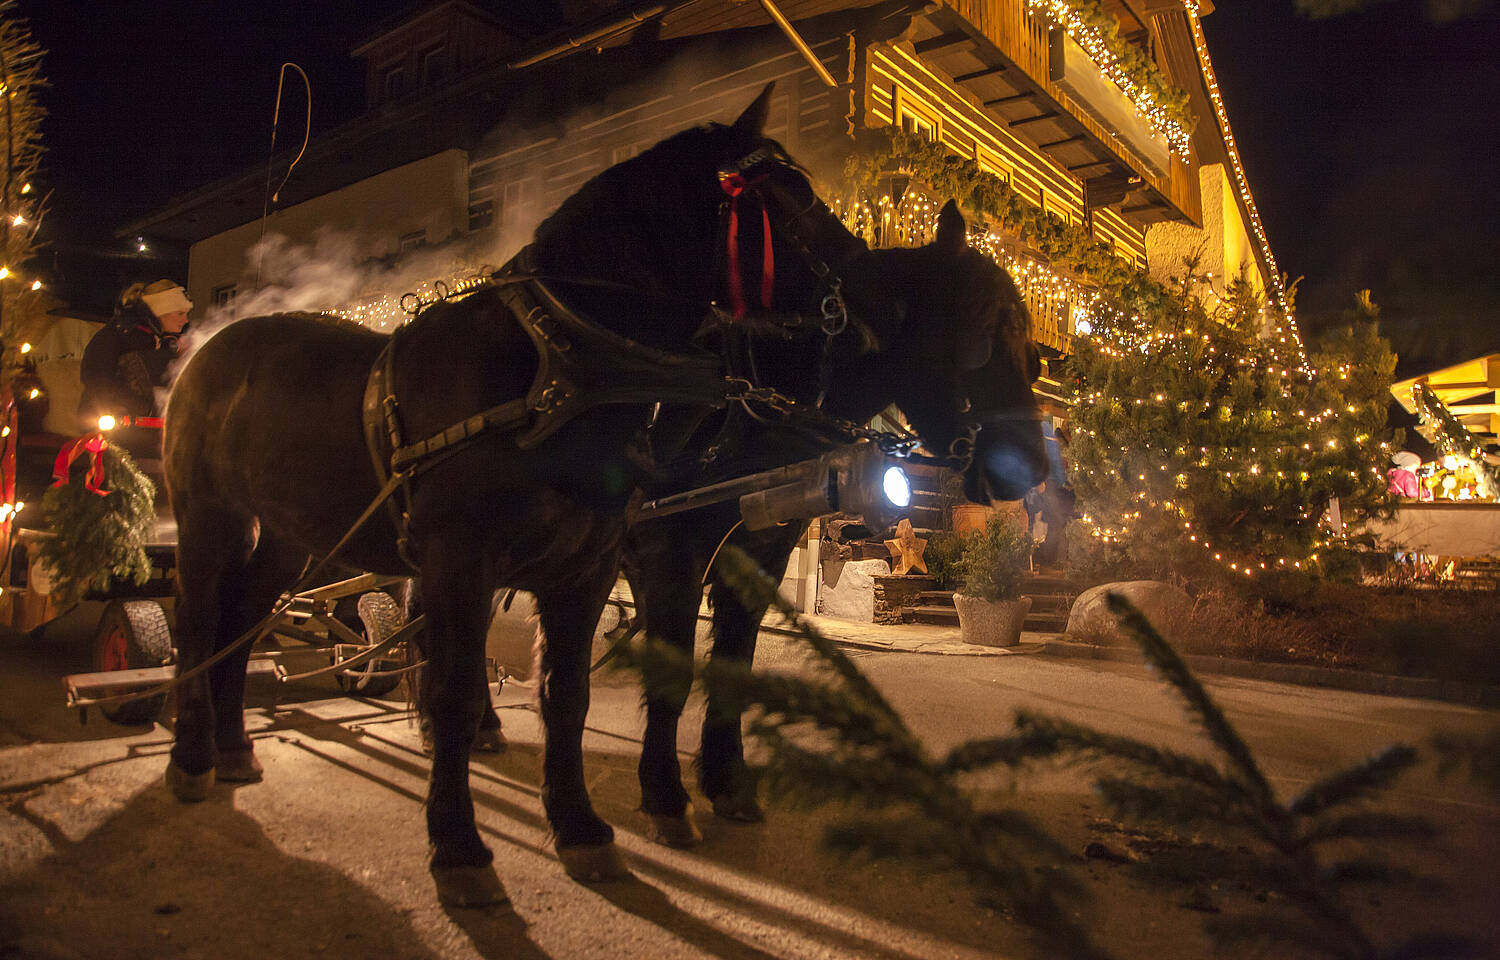 Romantische Pferdekutschenfahrten am Alpinen Thermen-Advent © BRM Mathias Prägant